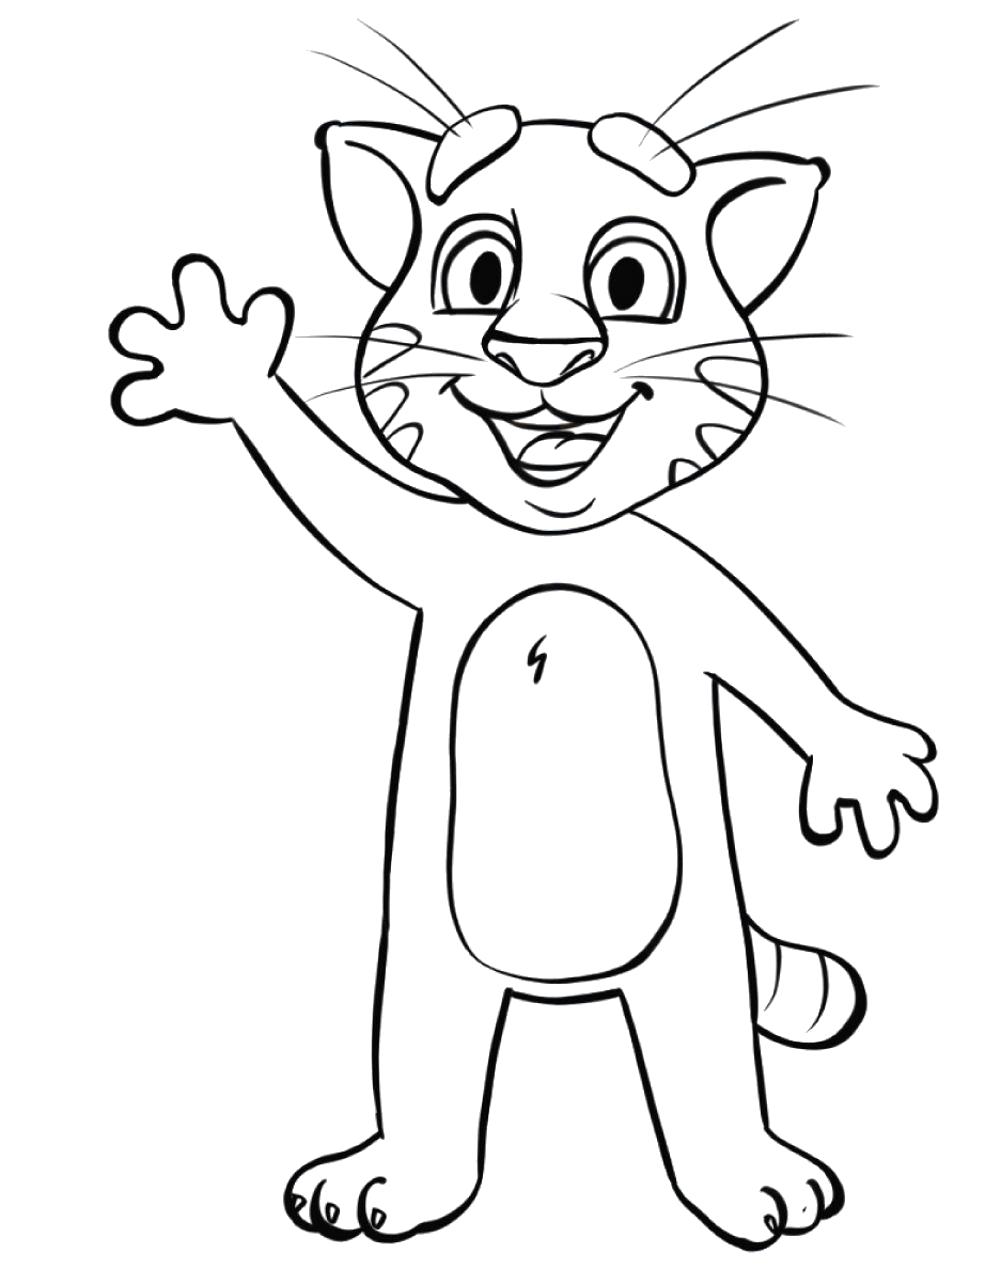 Раскраска  Говорящий Кот Том. Домашние животные